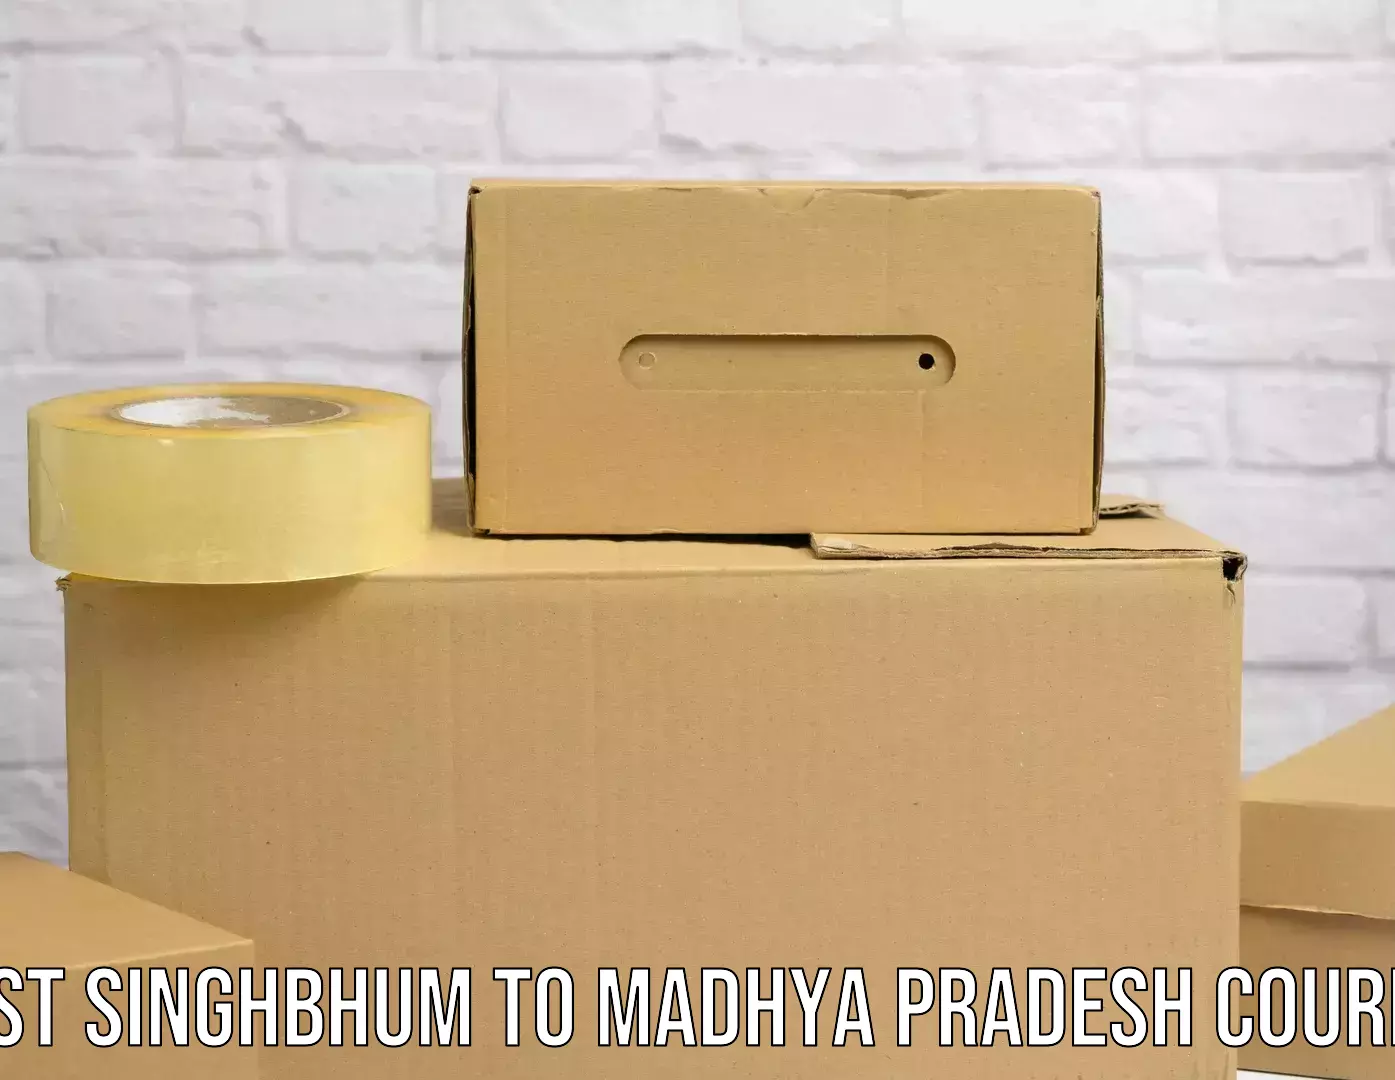 Custom logistics solutions East Singhbhum to Madhya Pradesh